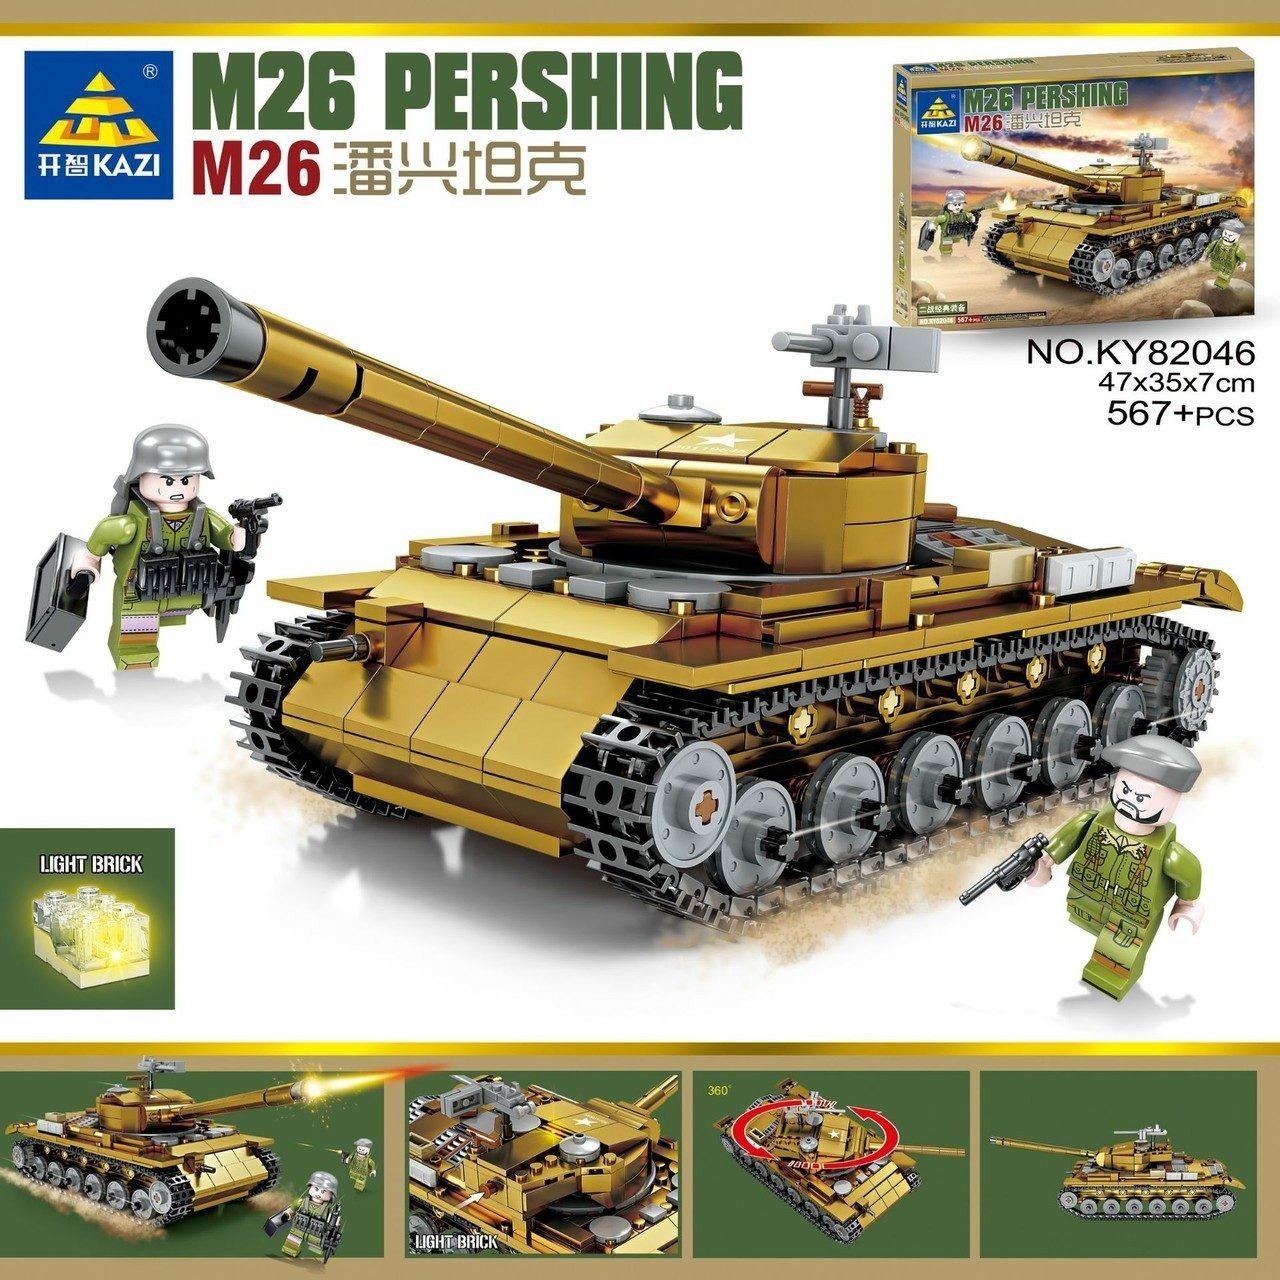 Конструктор Американский средний танк M26 Pershing со светом, KAZI 82046, аналог Лего